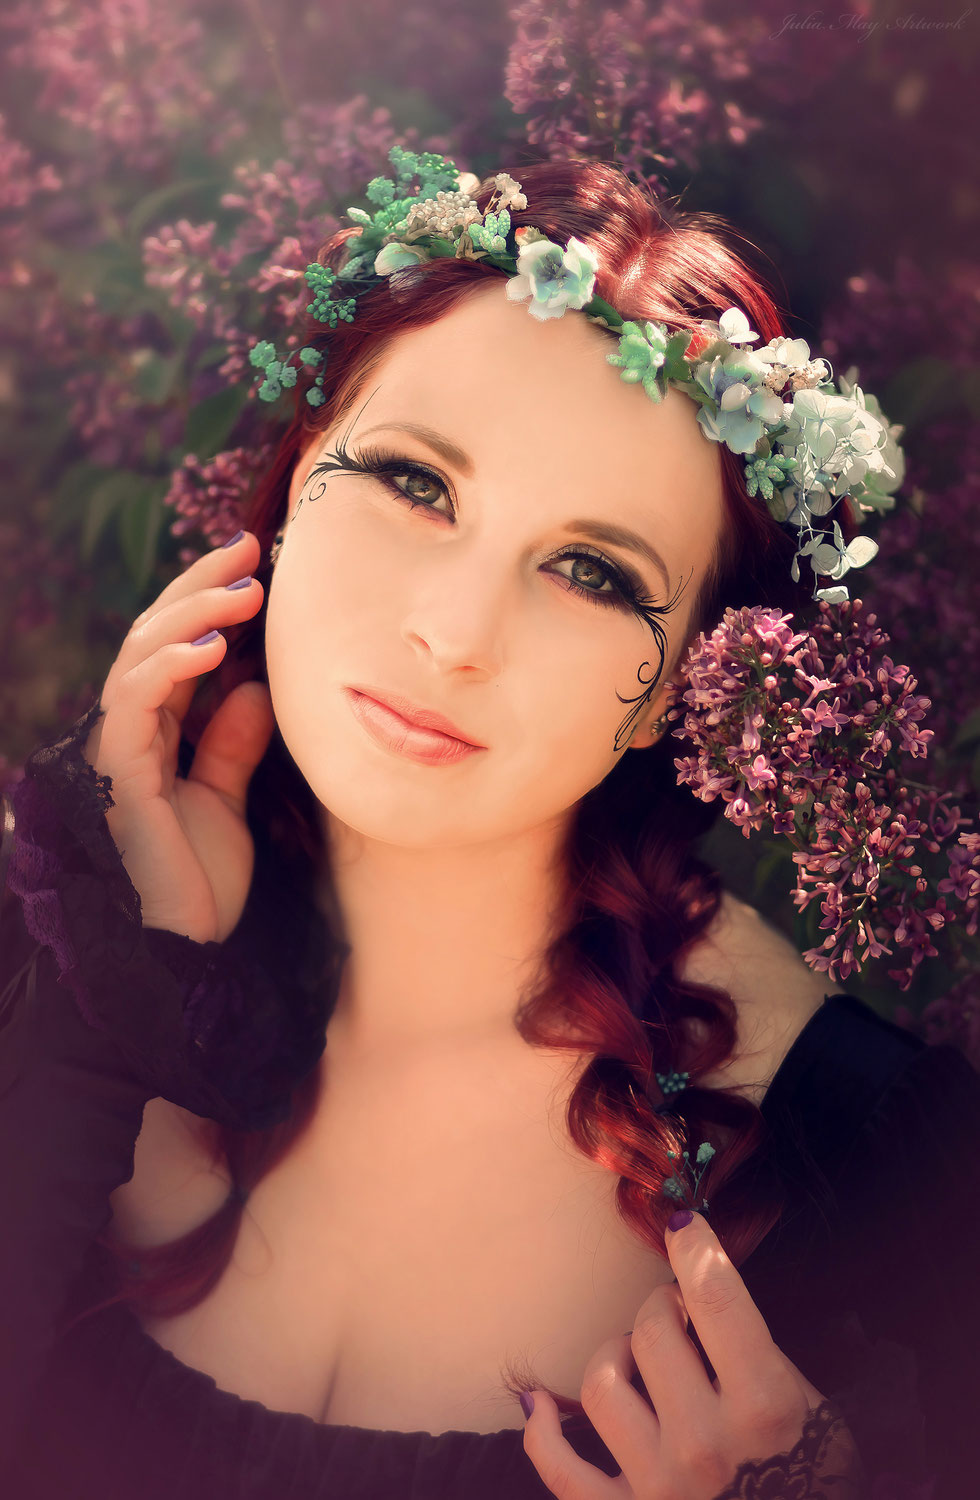 Frühlings-Shooting mit Kirschblüten und Flieder | Ideen für Portraitfotografie mit Trockenblumen | Haarkränze und Haarschmuck